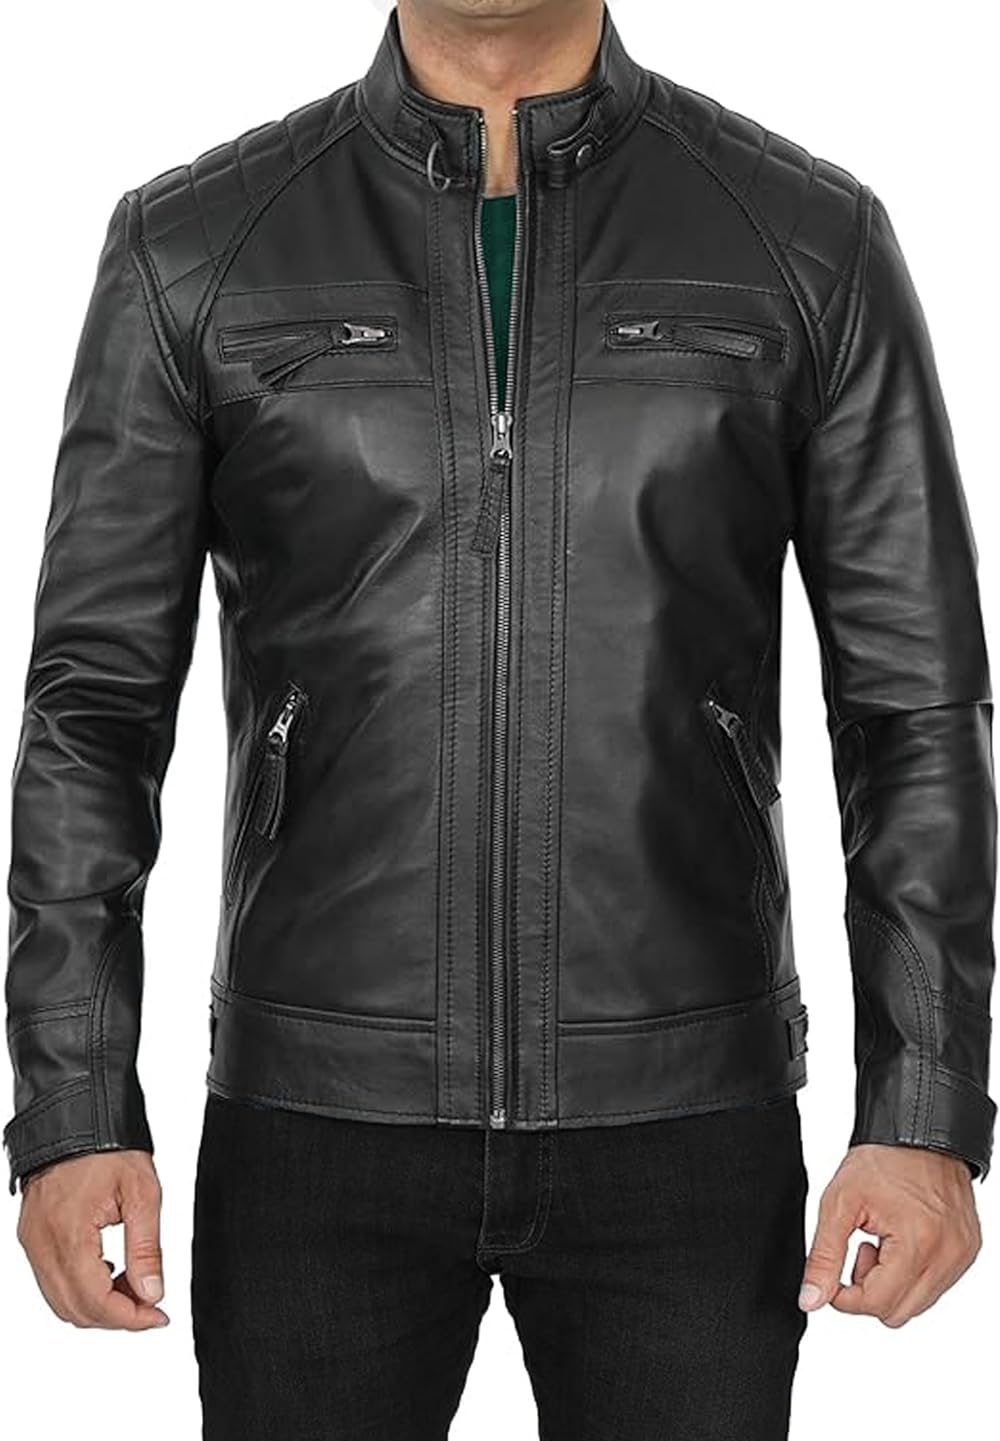 USTRADEENT Men's Biker Jacket with Lambskin Genuine Leather - Walmart.com